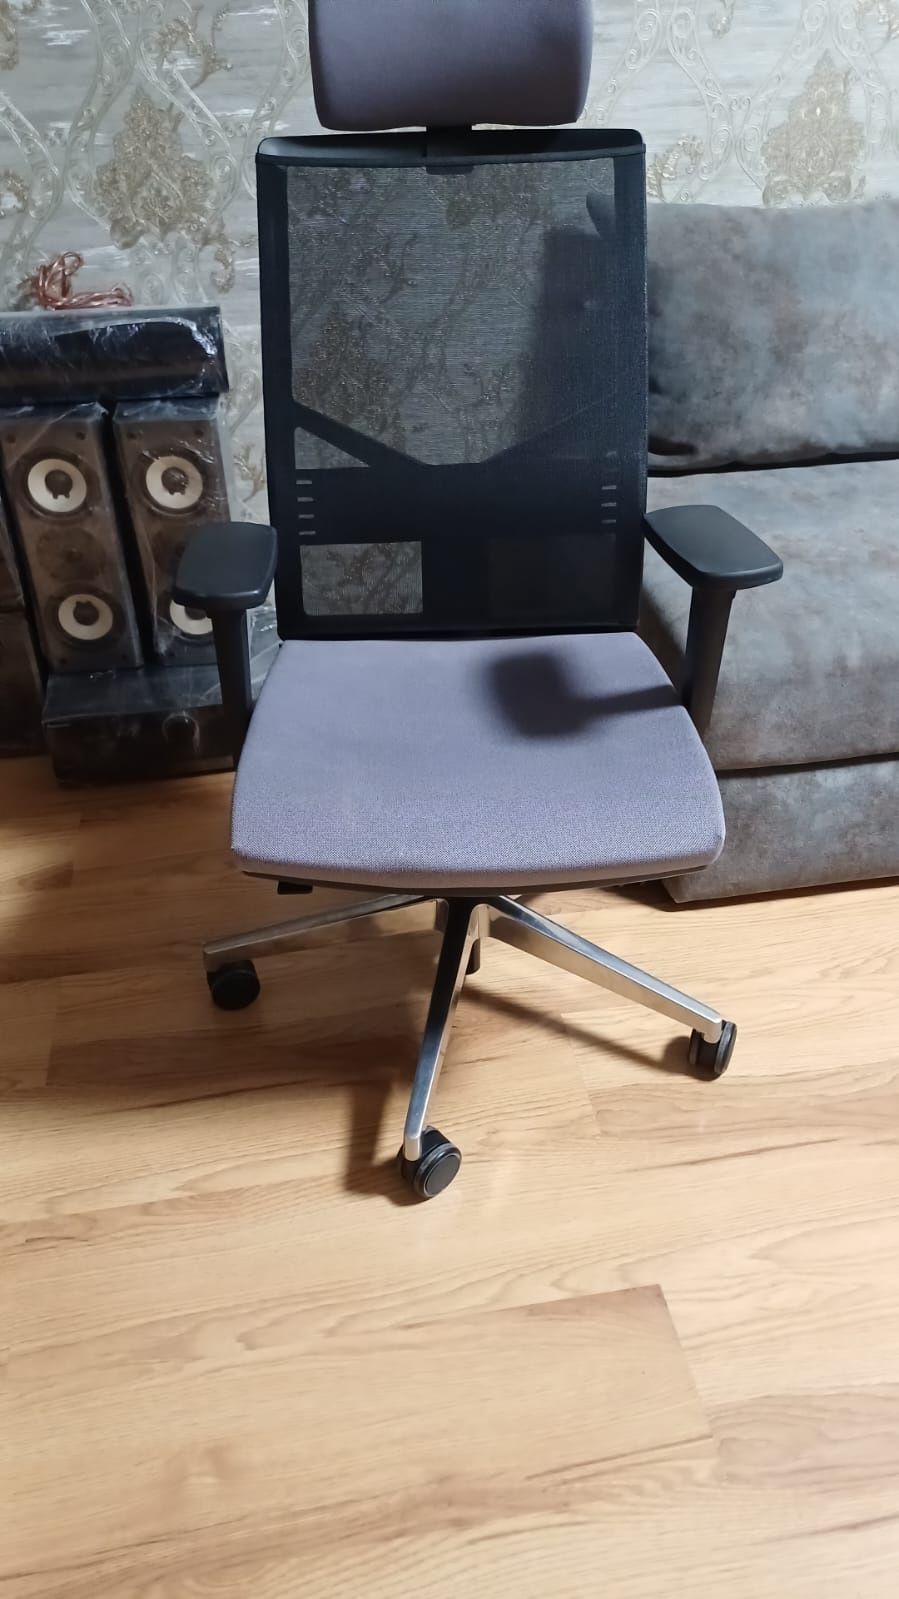 Очень надёжный и удобный стул.